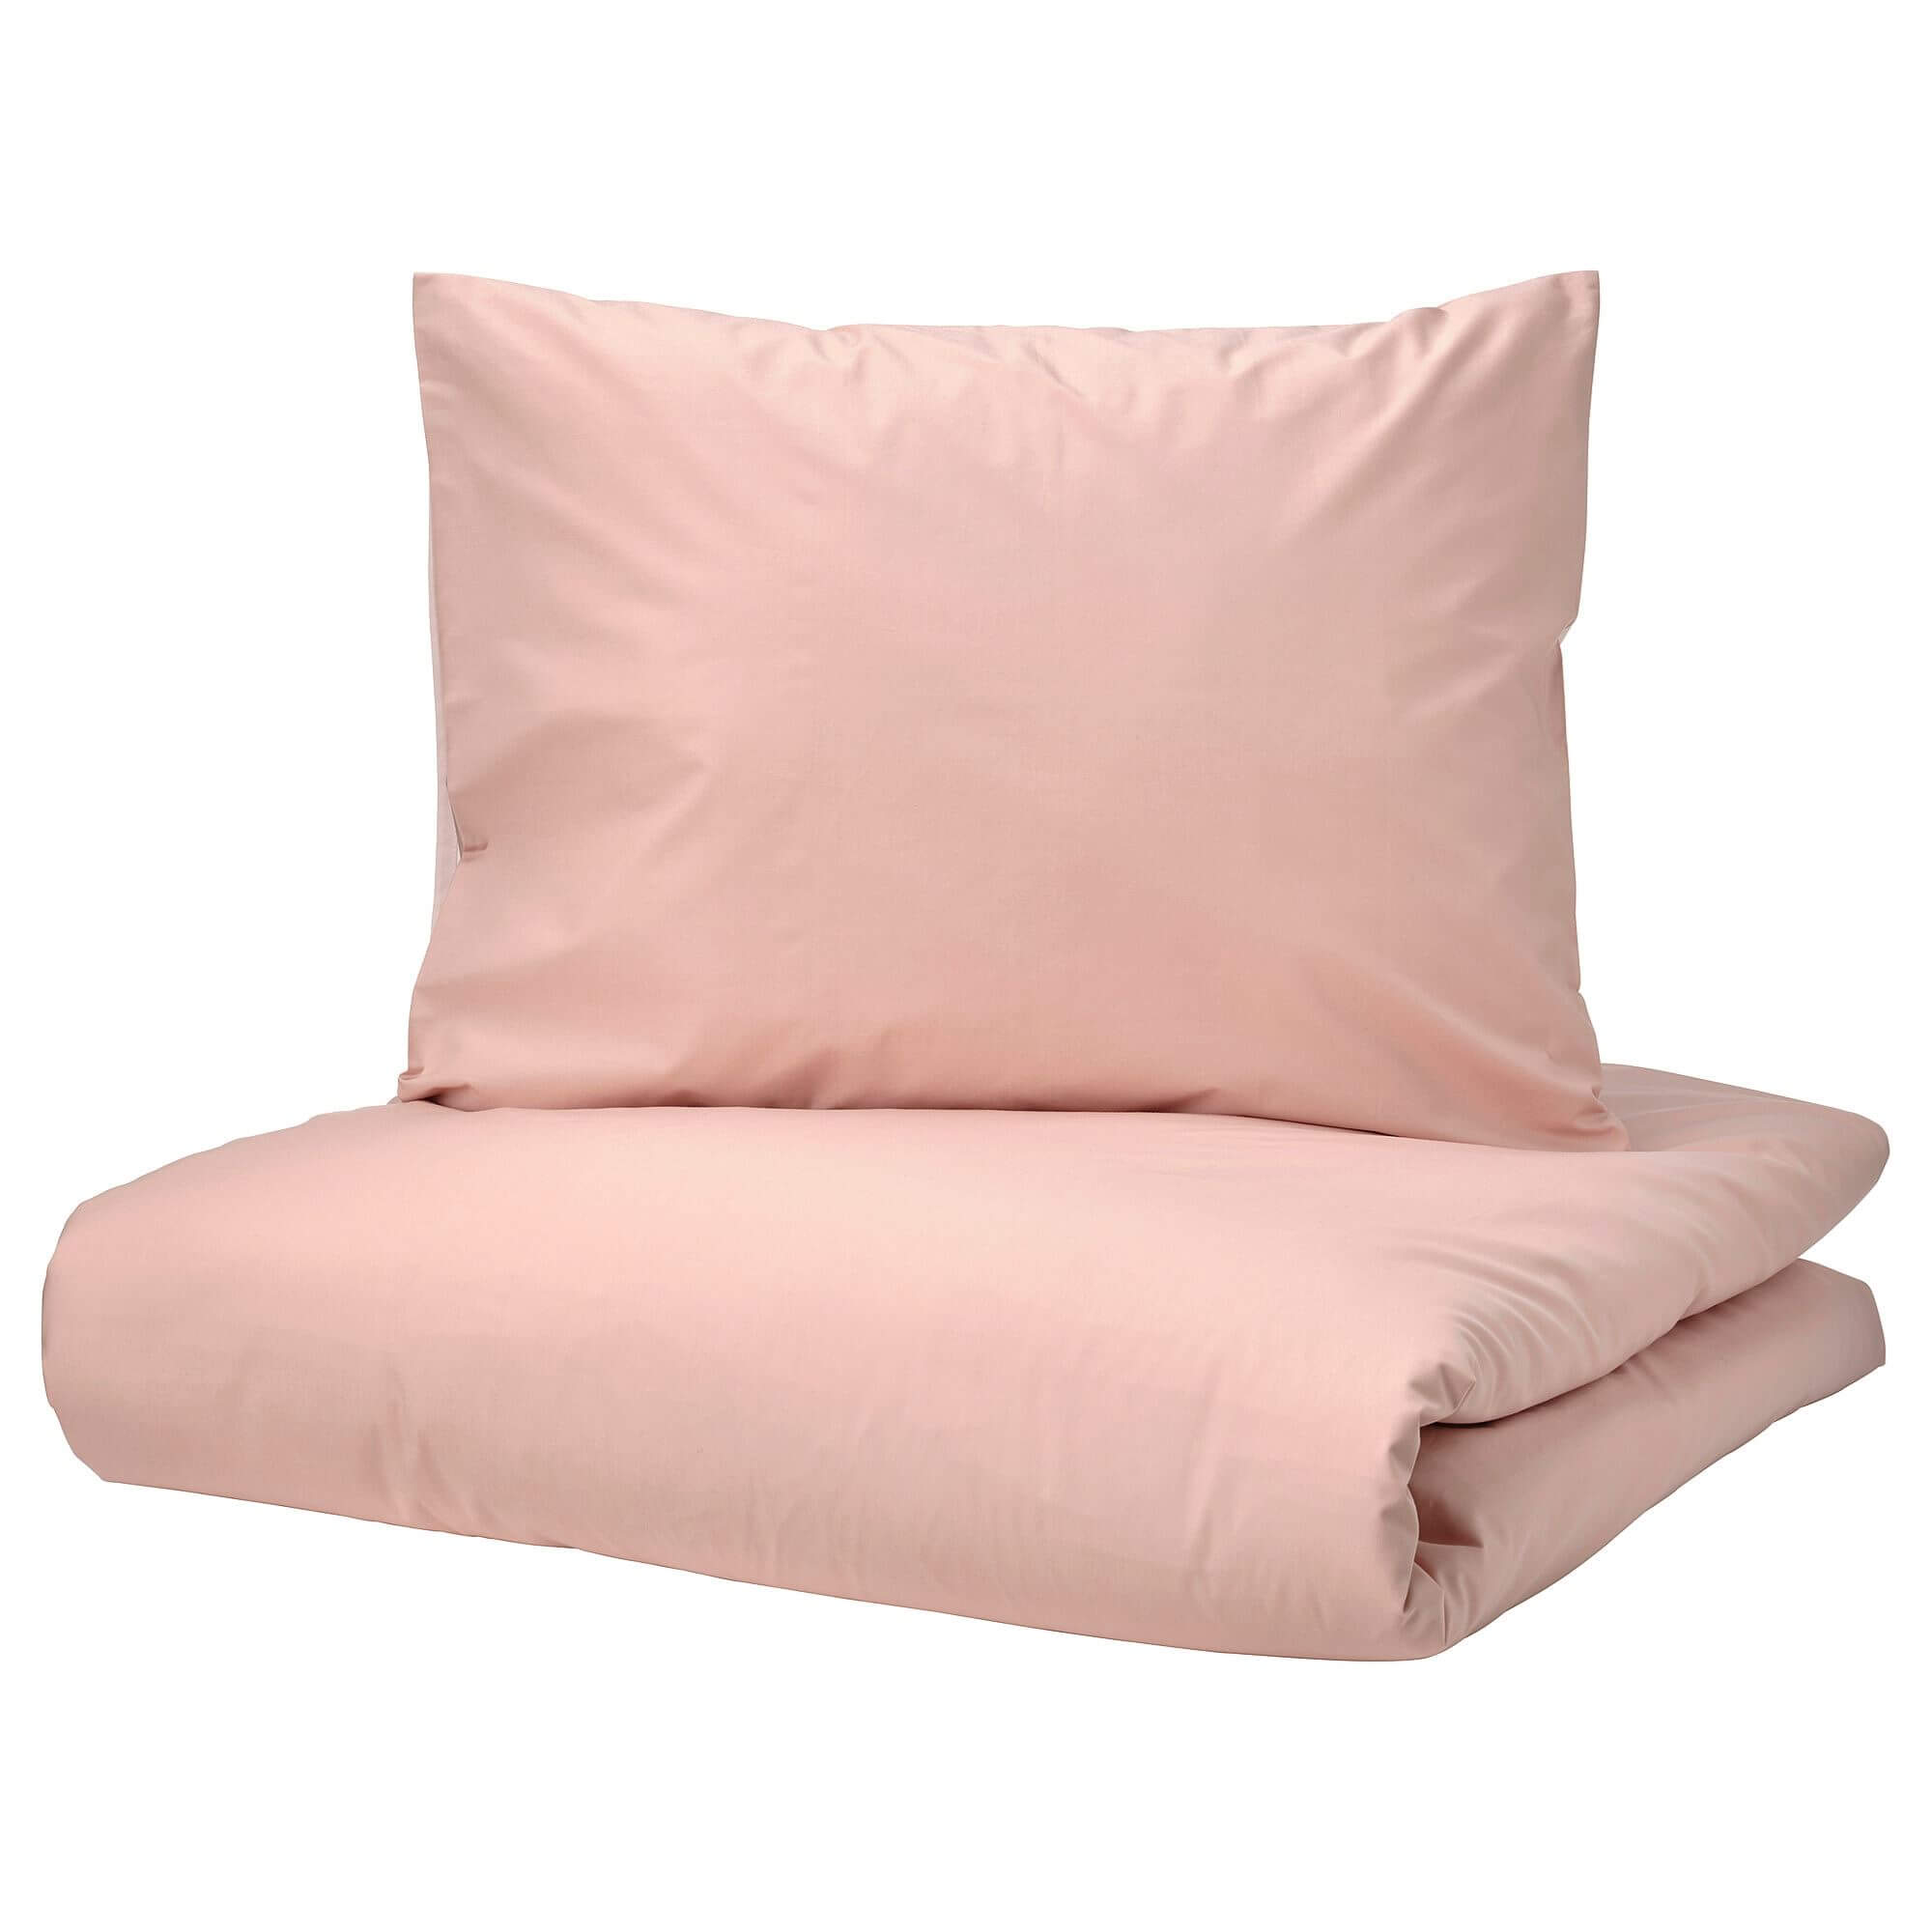 комплект постельного белья ikea junimagnolia 2 предмета белый темно синий Комплект постельного белья Ikea Strandtall, 3 предмета, розовый